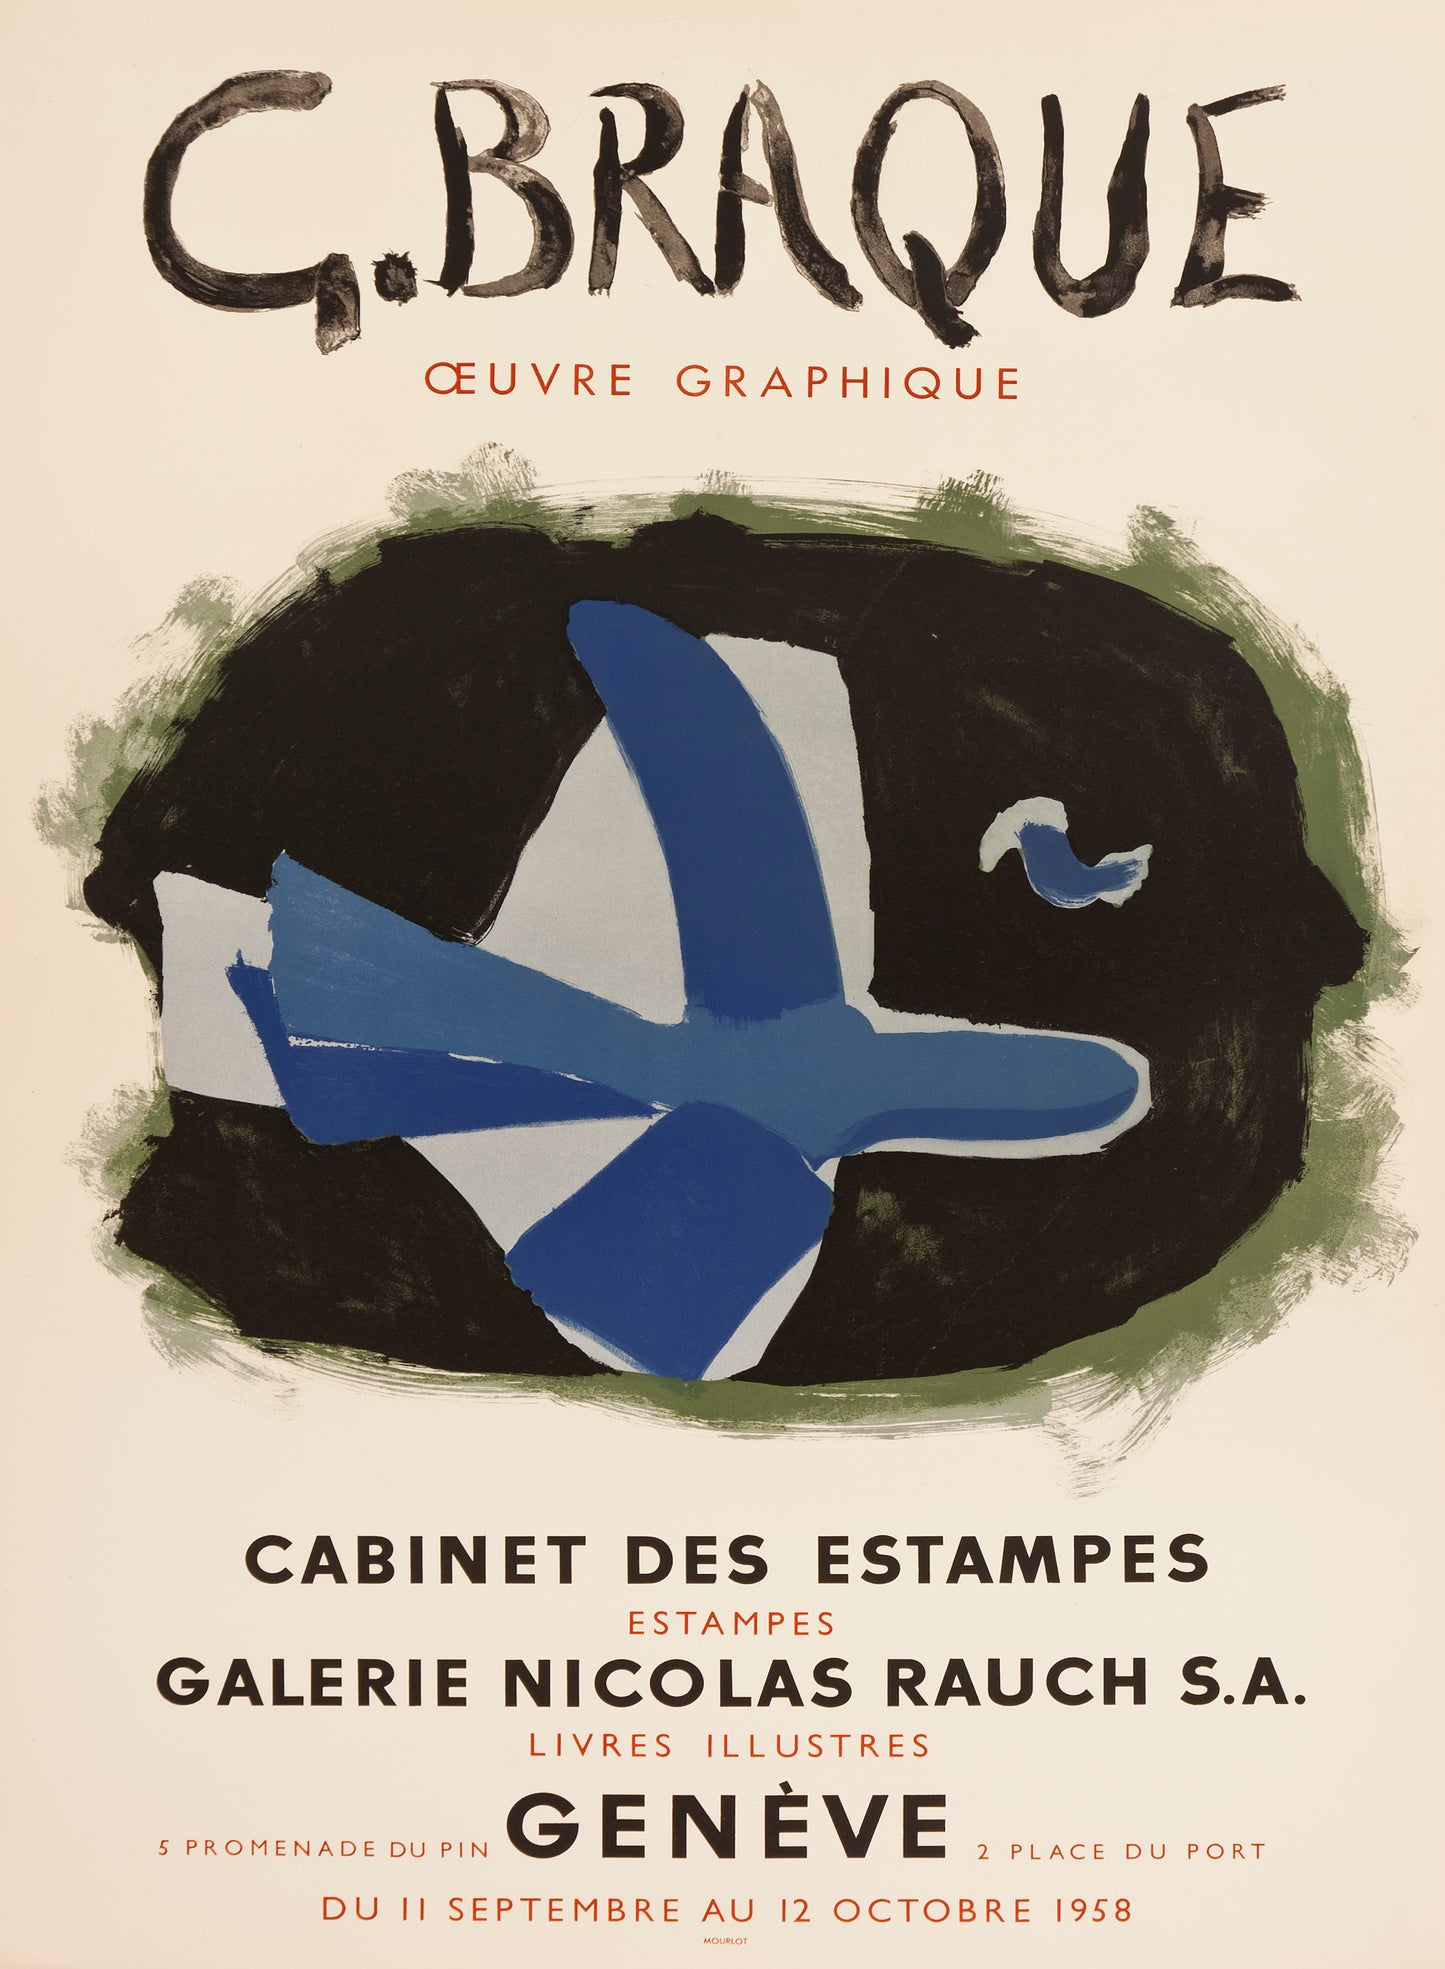 L'Oiseau des forêts - Galerie Nicolas Rauch by Georges Braque, 1958 - Mourlot Editions - Fine_Art - Poster - Lithograph - Wall Art - Vintage - Prints - Original